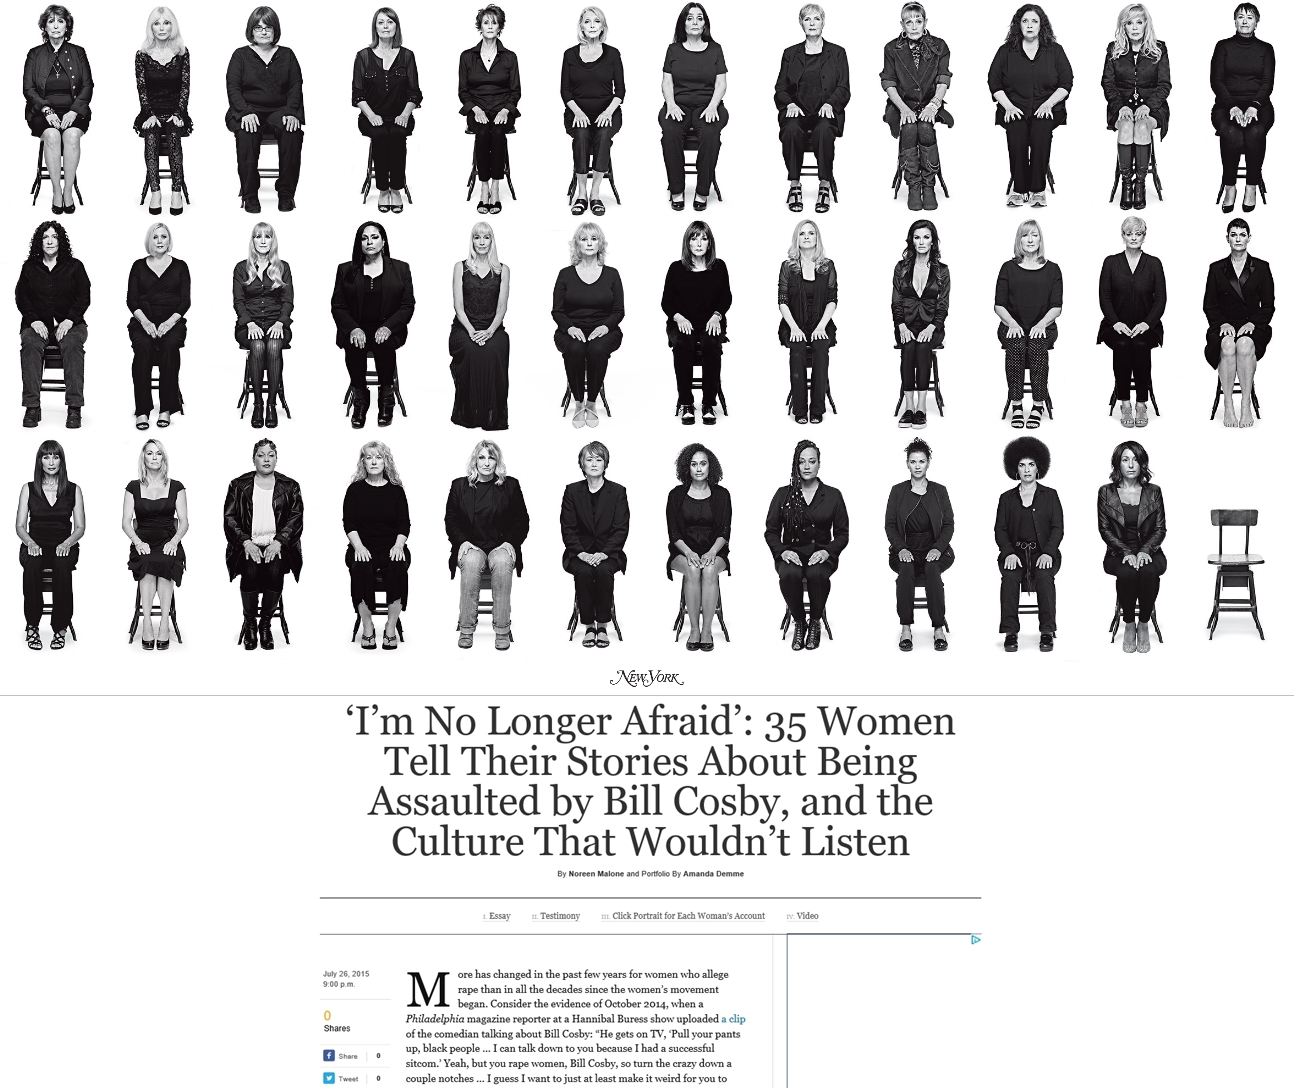 코미디언 빌 코스비에게 성폭행을 당했다고 주장한 여성 35명의 사진과 실명, 이야기를 실은 2015년 5월호 미국 뉴욕매거진. 2018.9.26  뉴욕매거진 홈페이지